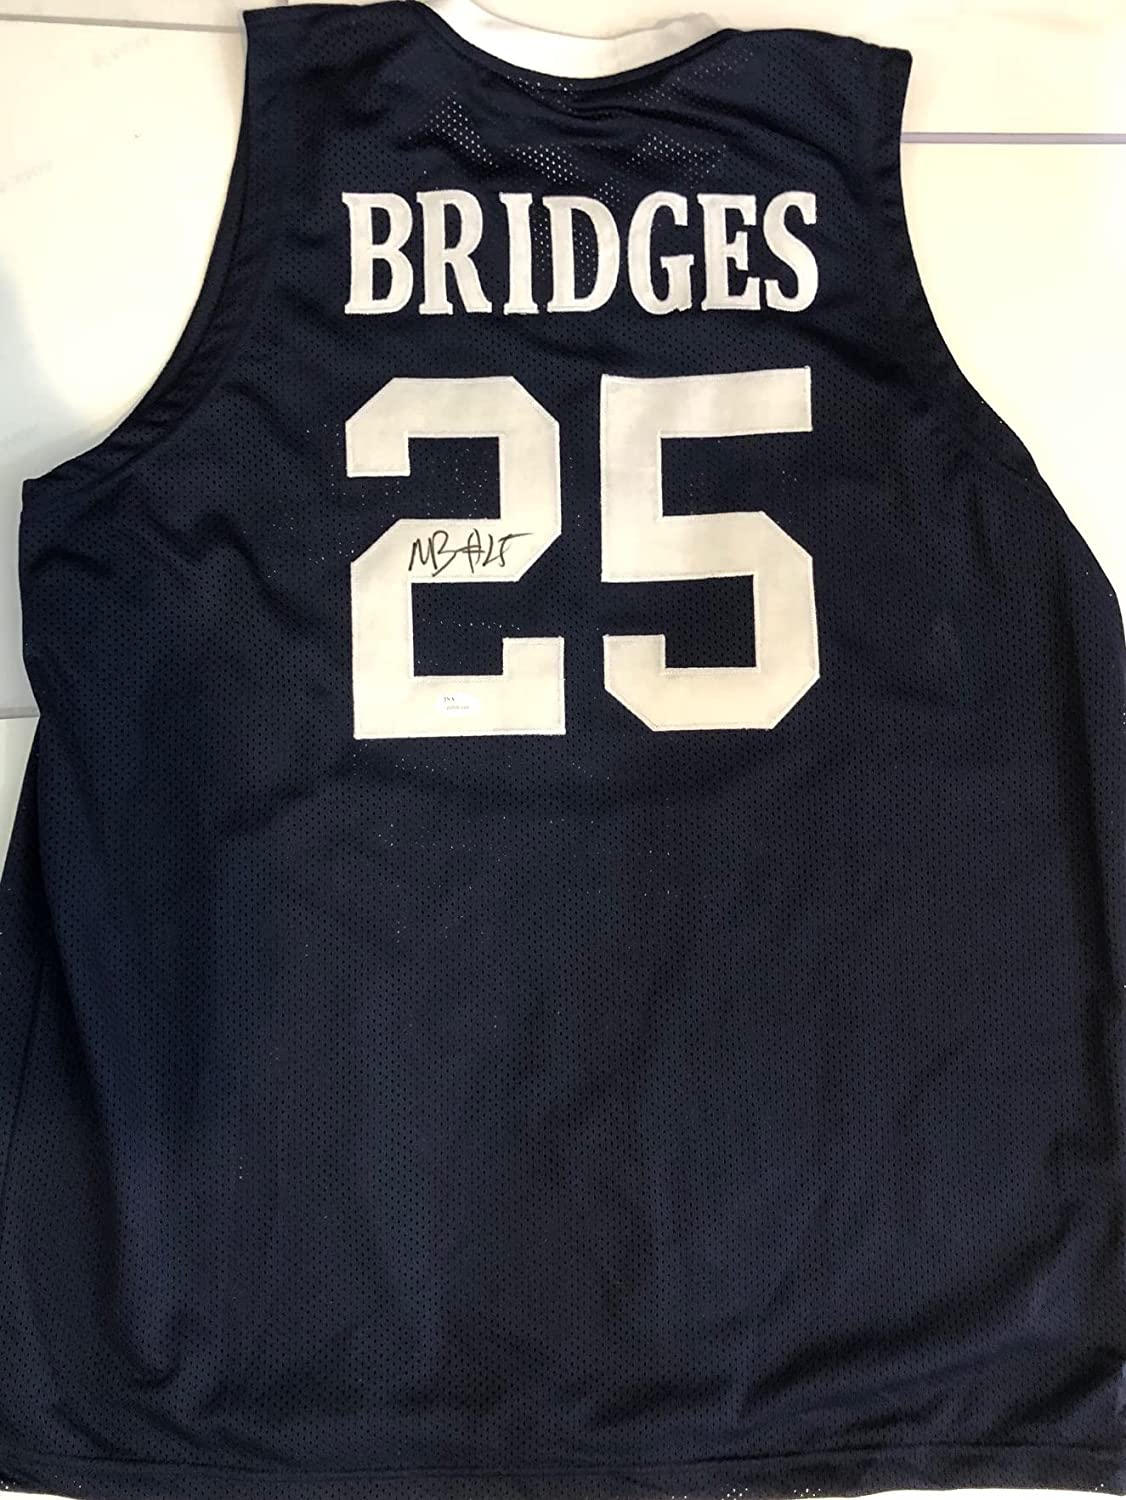 mikal bridges signed jersey